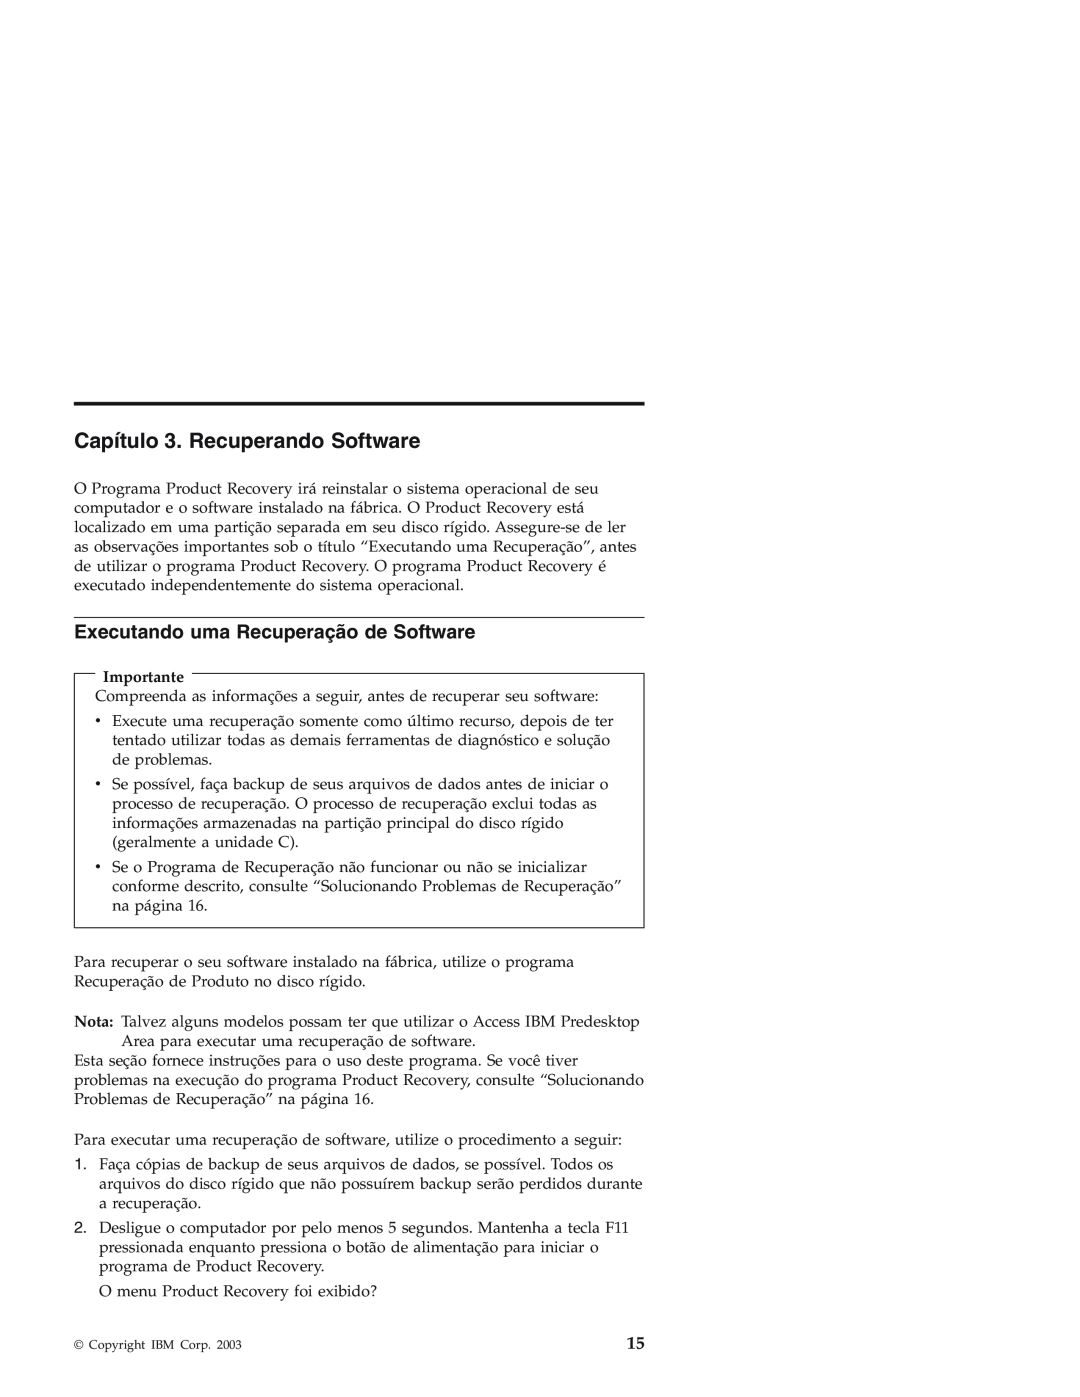 IBM Personal Computer manual Capítulo 3. Recuperando Software, Executando uma Recuperação de Software 